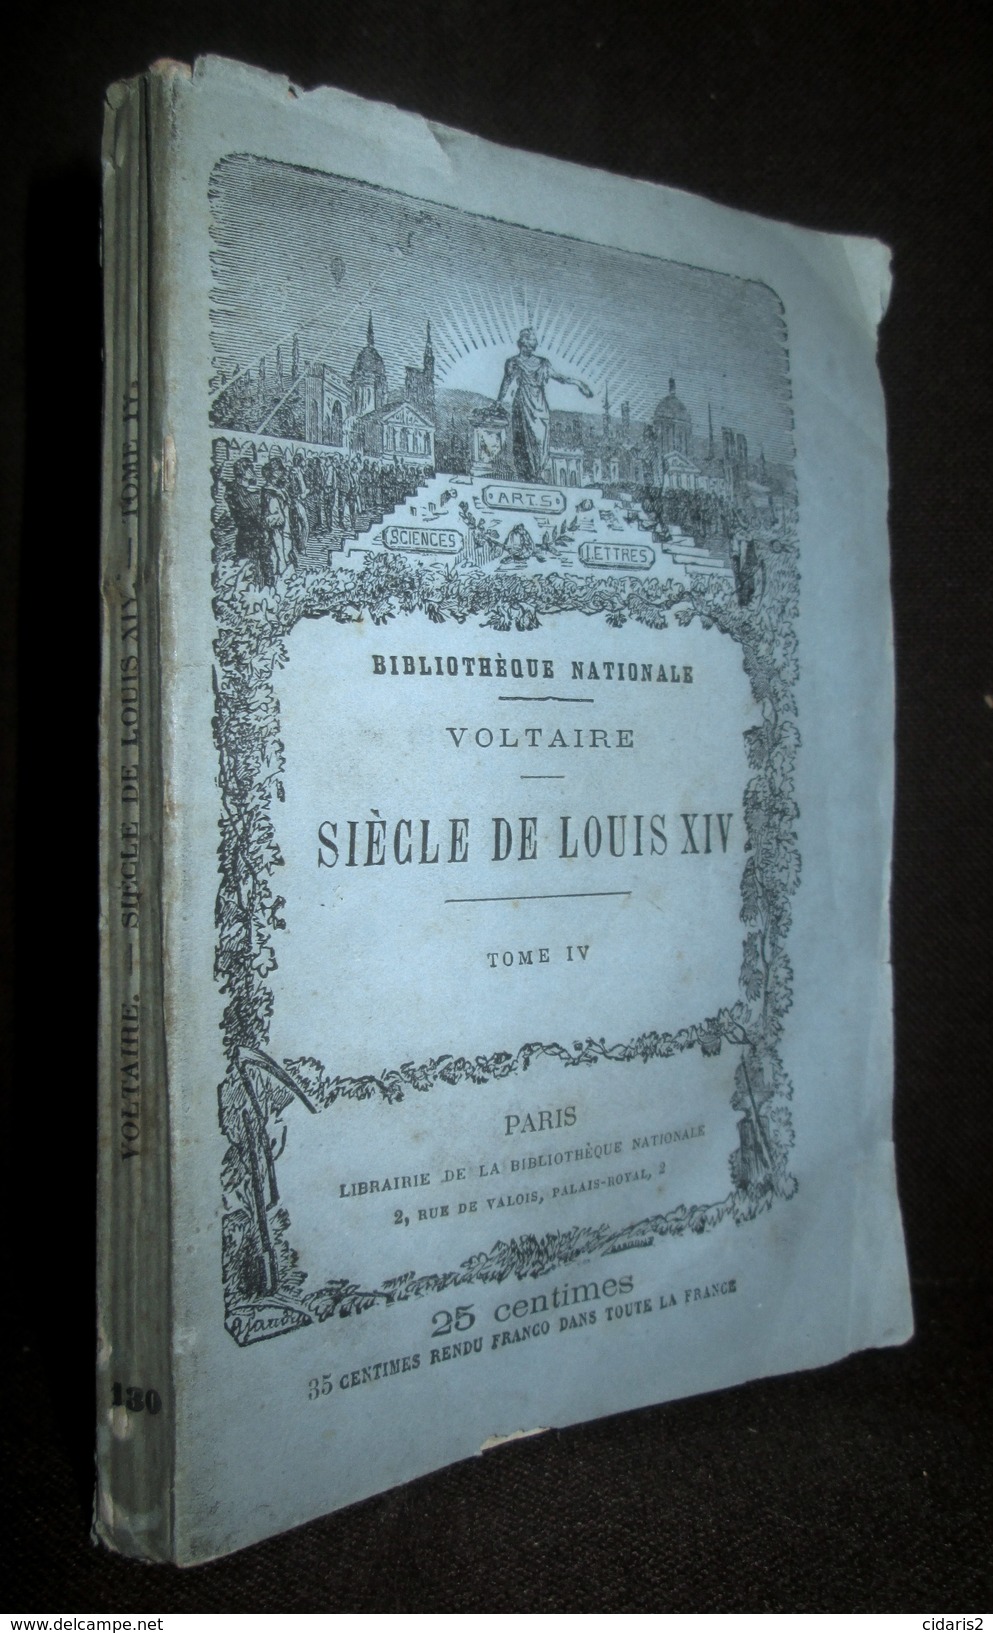 Lot 20 titres Collection "Meilleurs Auteurs Anciens & Modernes" BIBLIOTHEQUE NATIONALE Voltaire... Litterature c1875 !